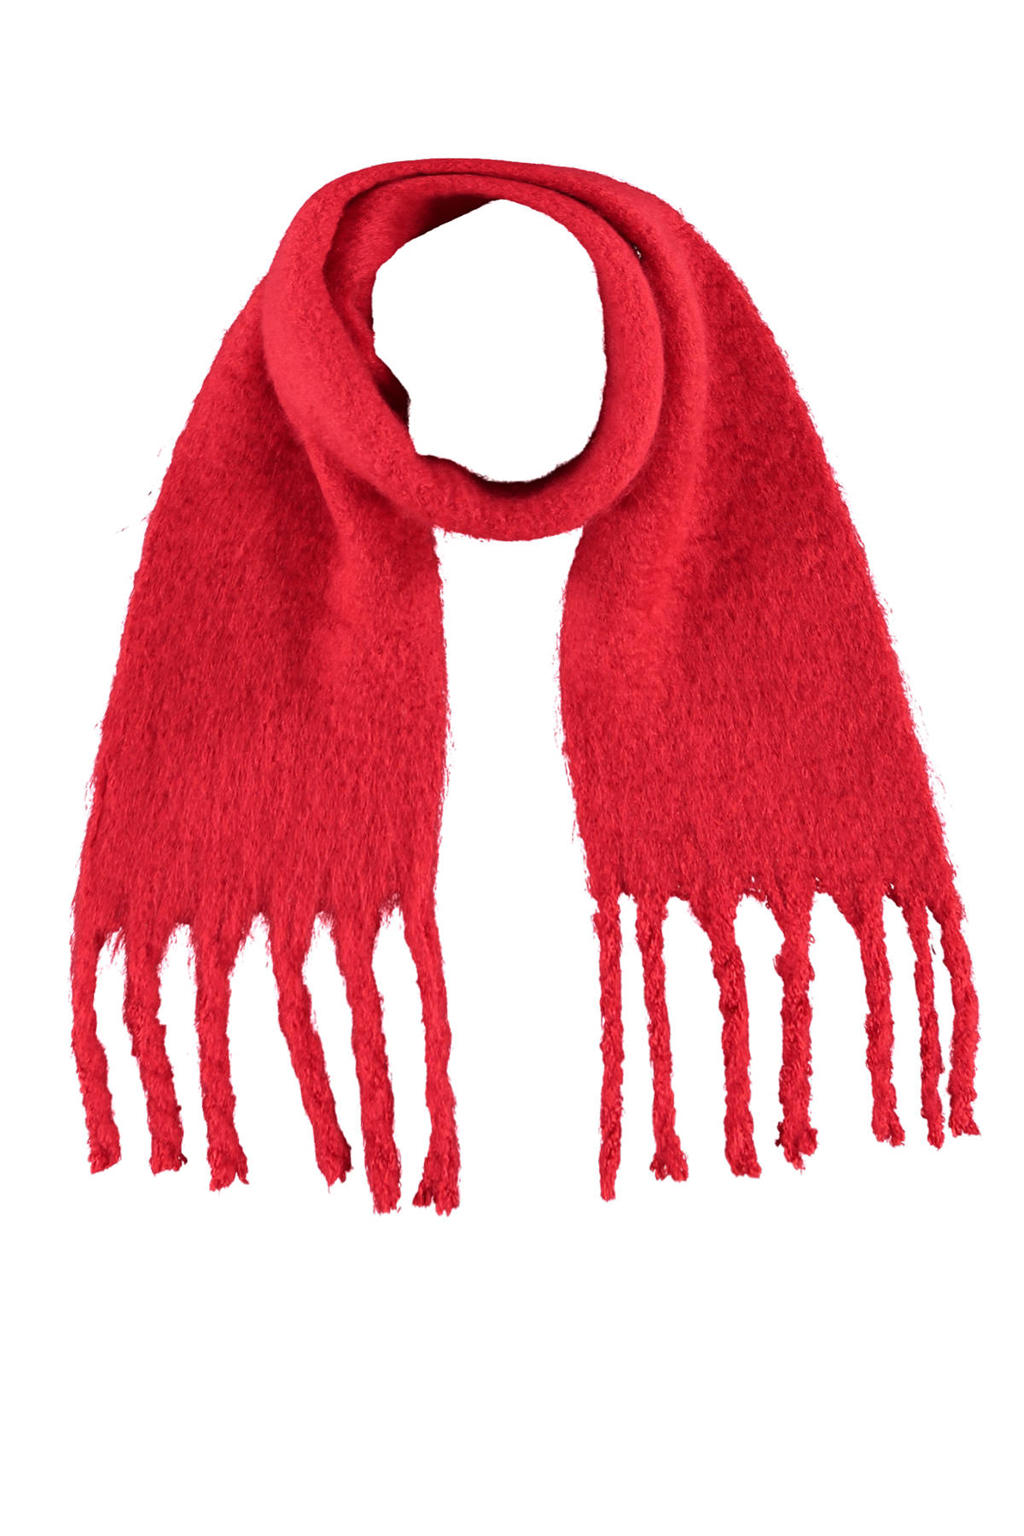 Sarlini sjaal rood